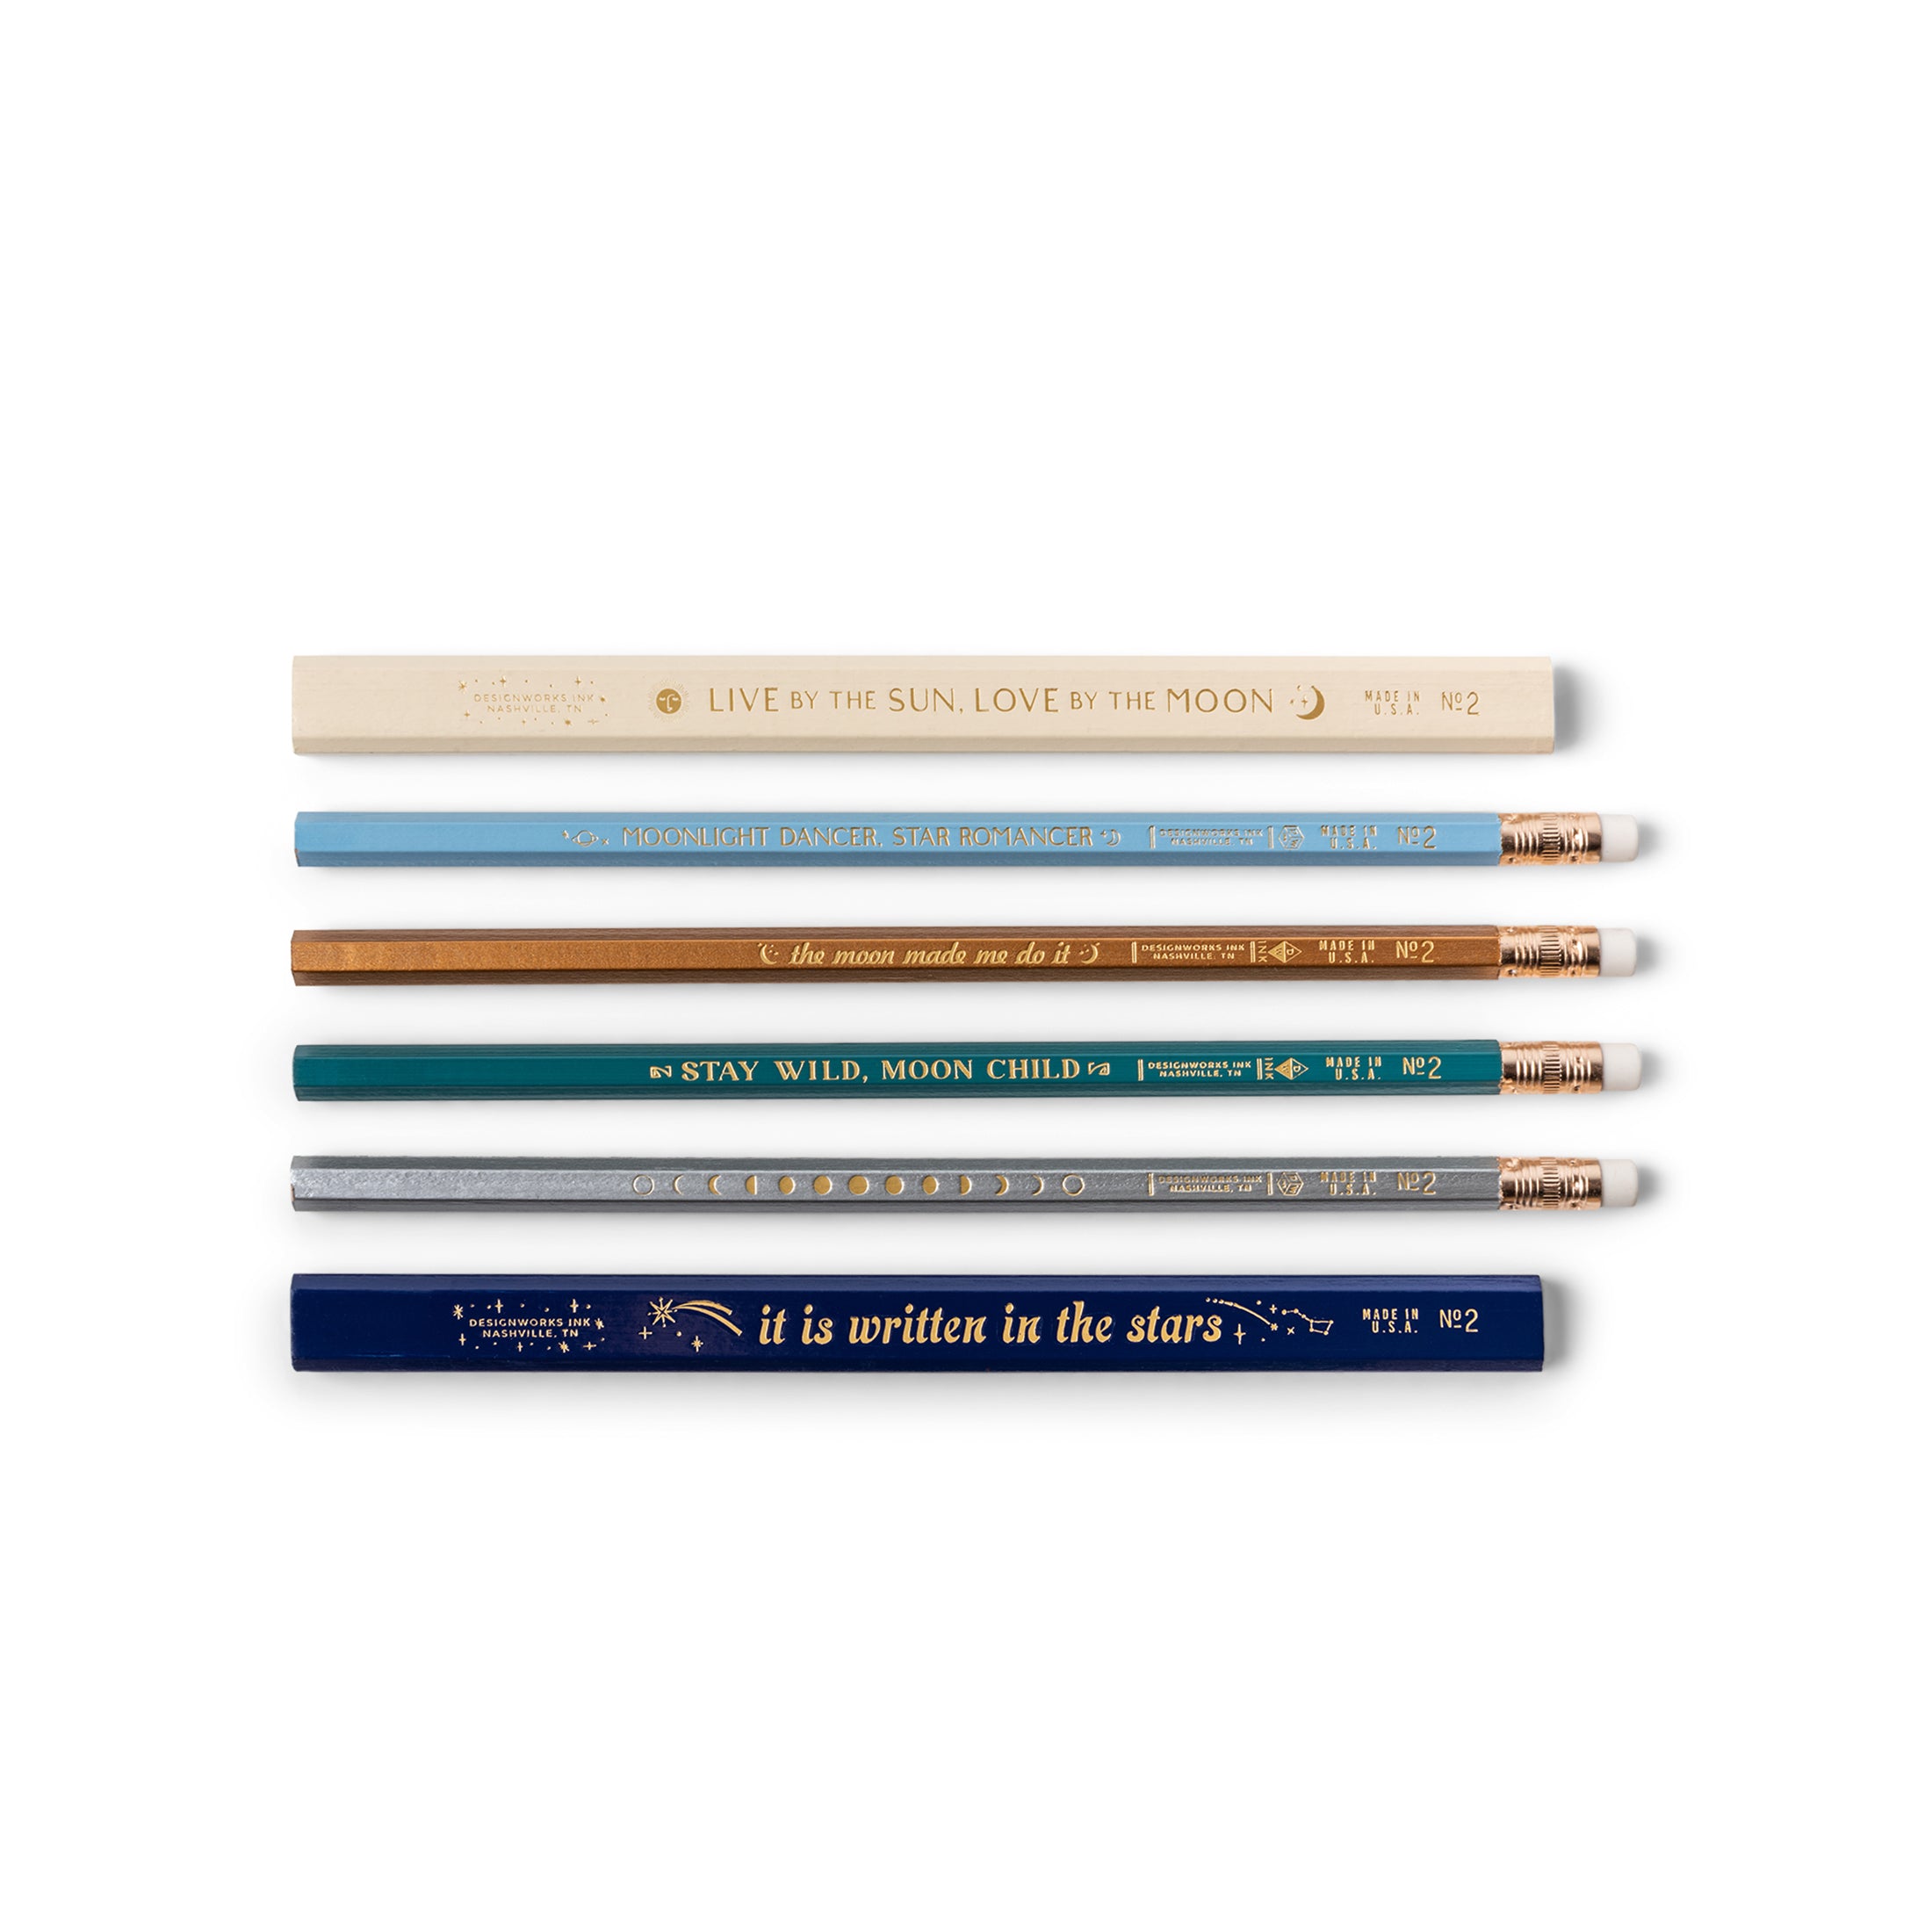 Herring & Bones - Concept Store Joyeux - Designworks Ink - Crayons - Lot de 6 crayons à papier avec citations